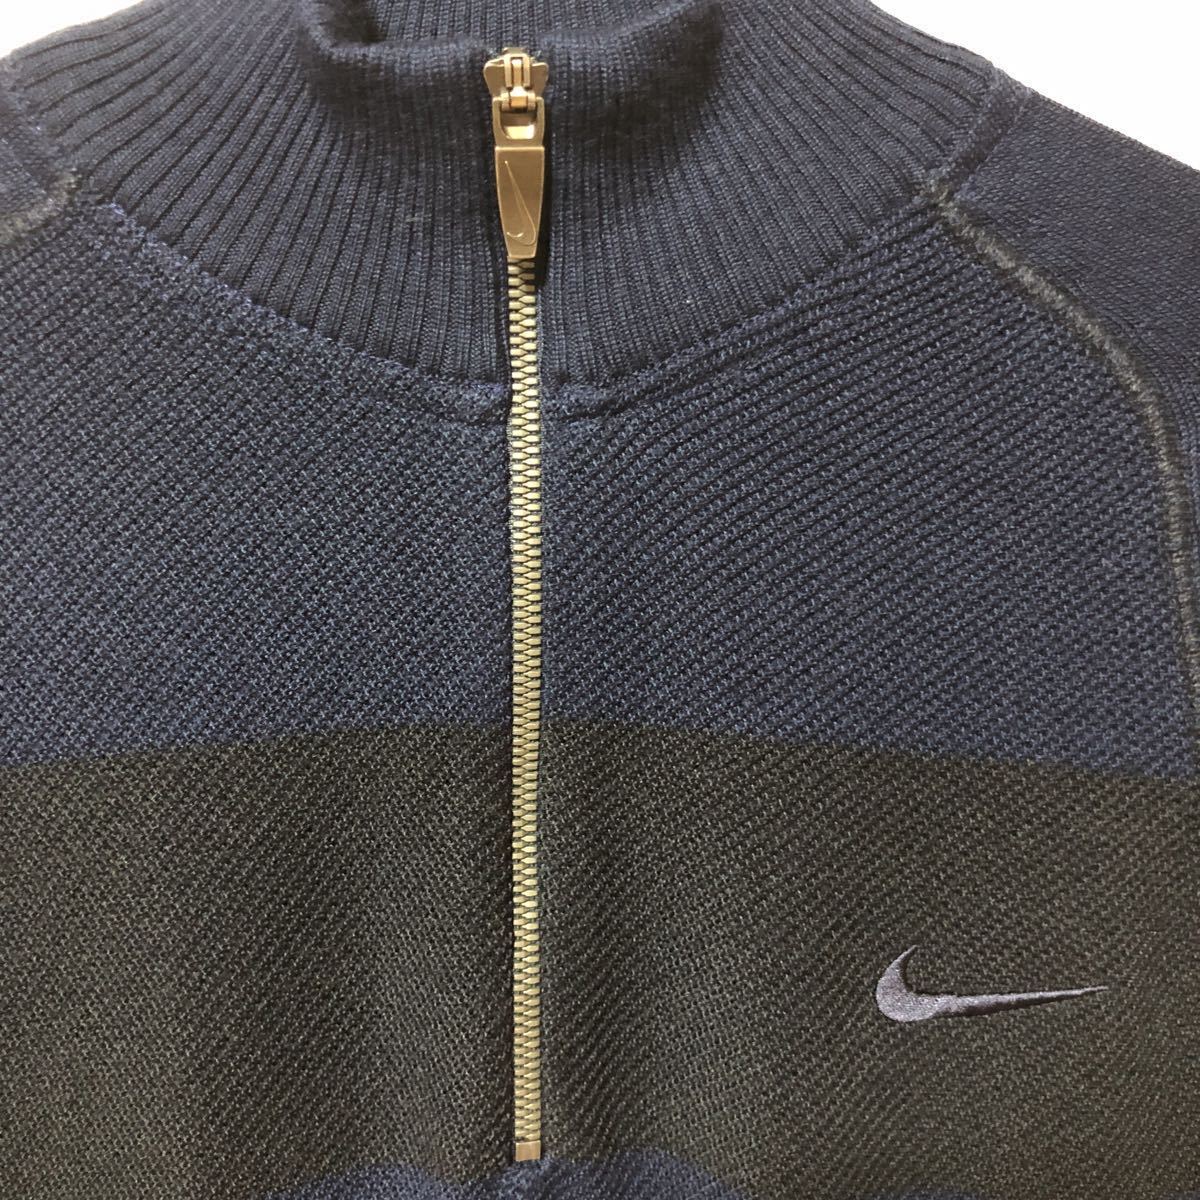 [NIKE GOLF] Nike Golf половина Zip свитер темно-синий × черный хорошая вещь модный!